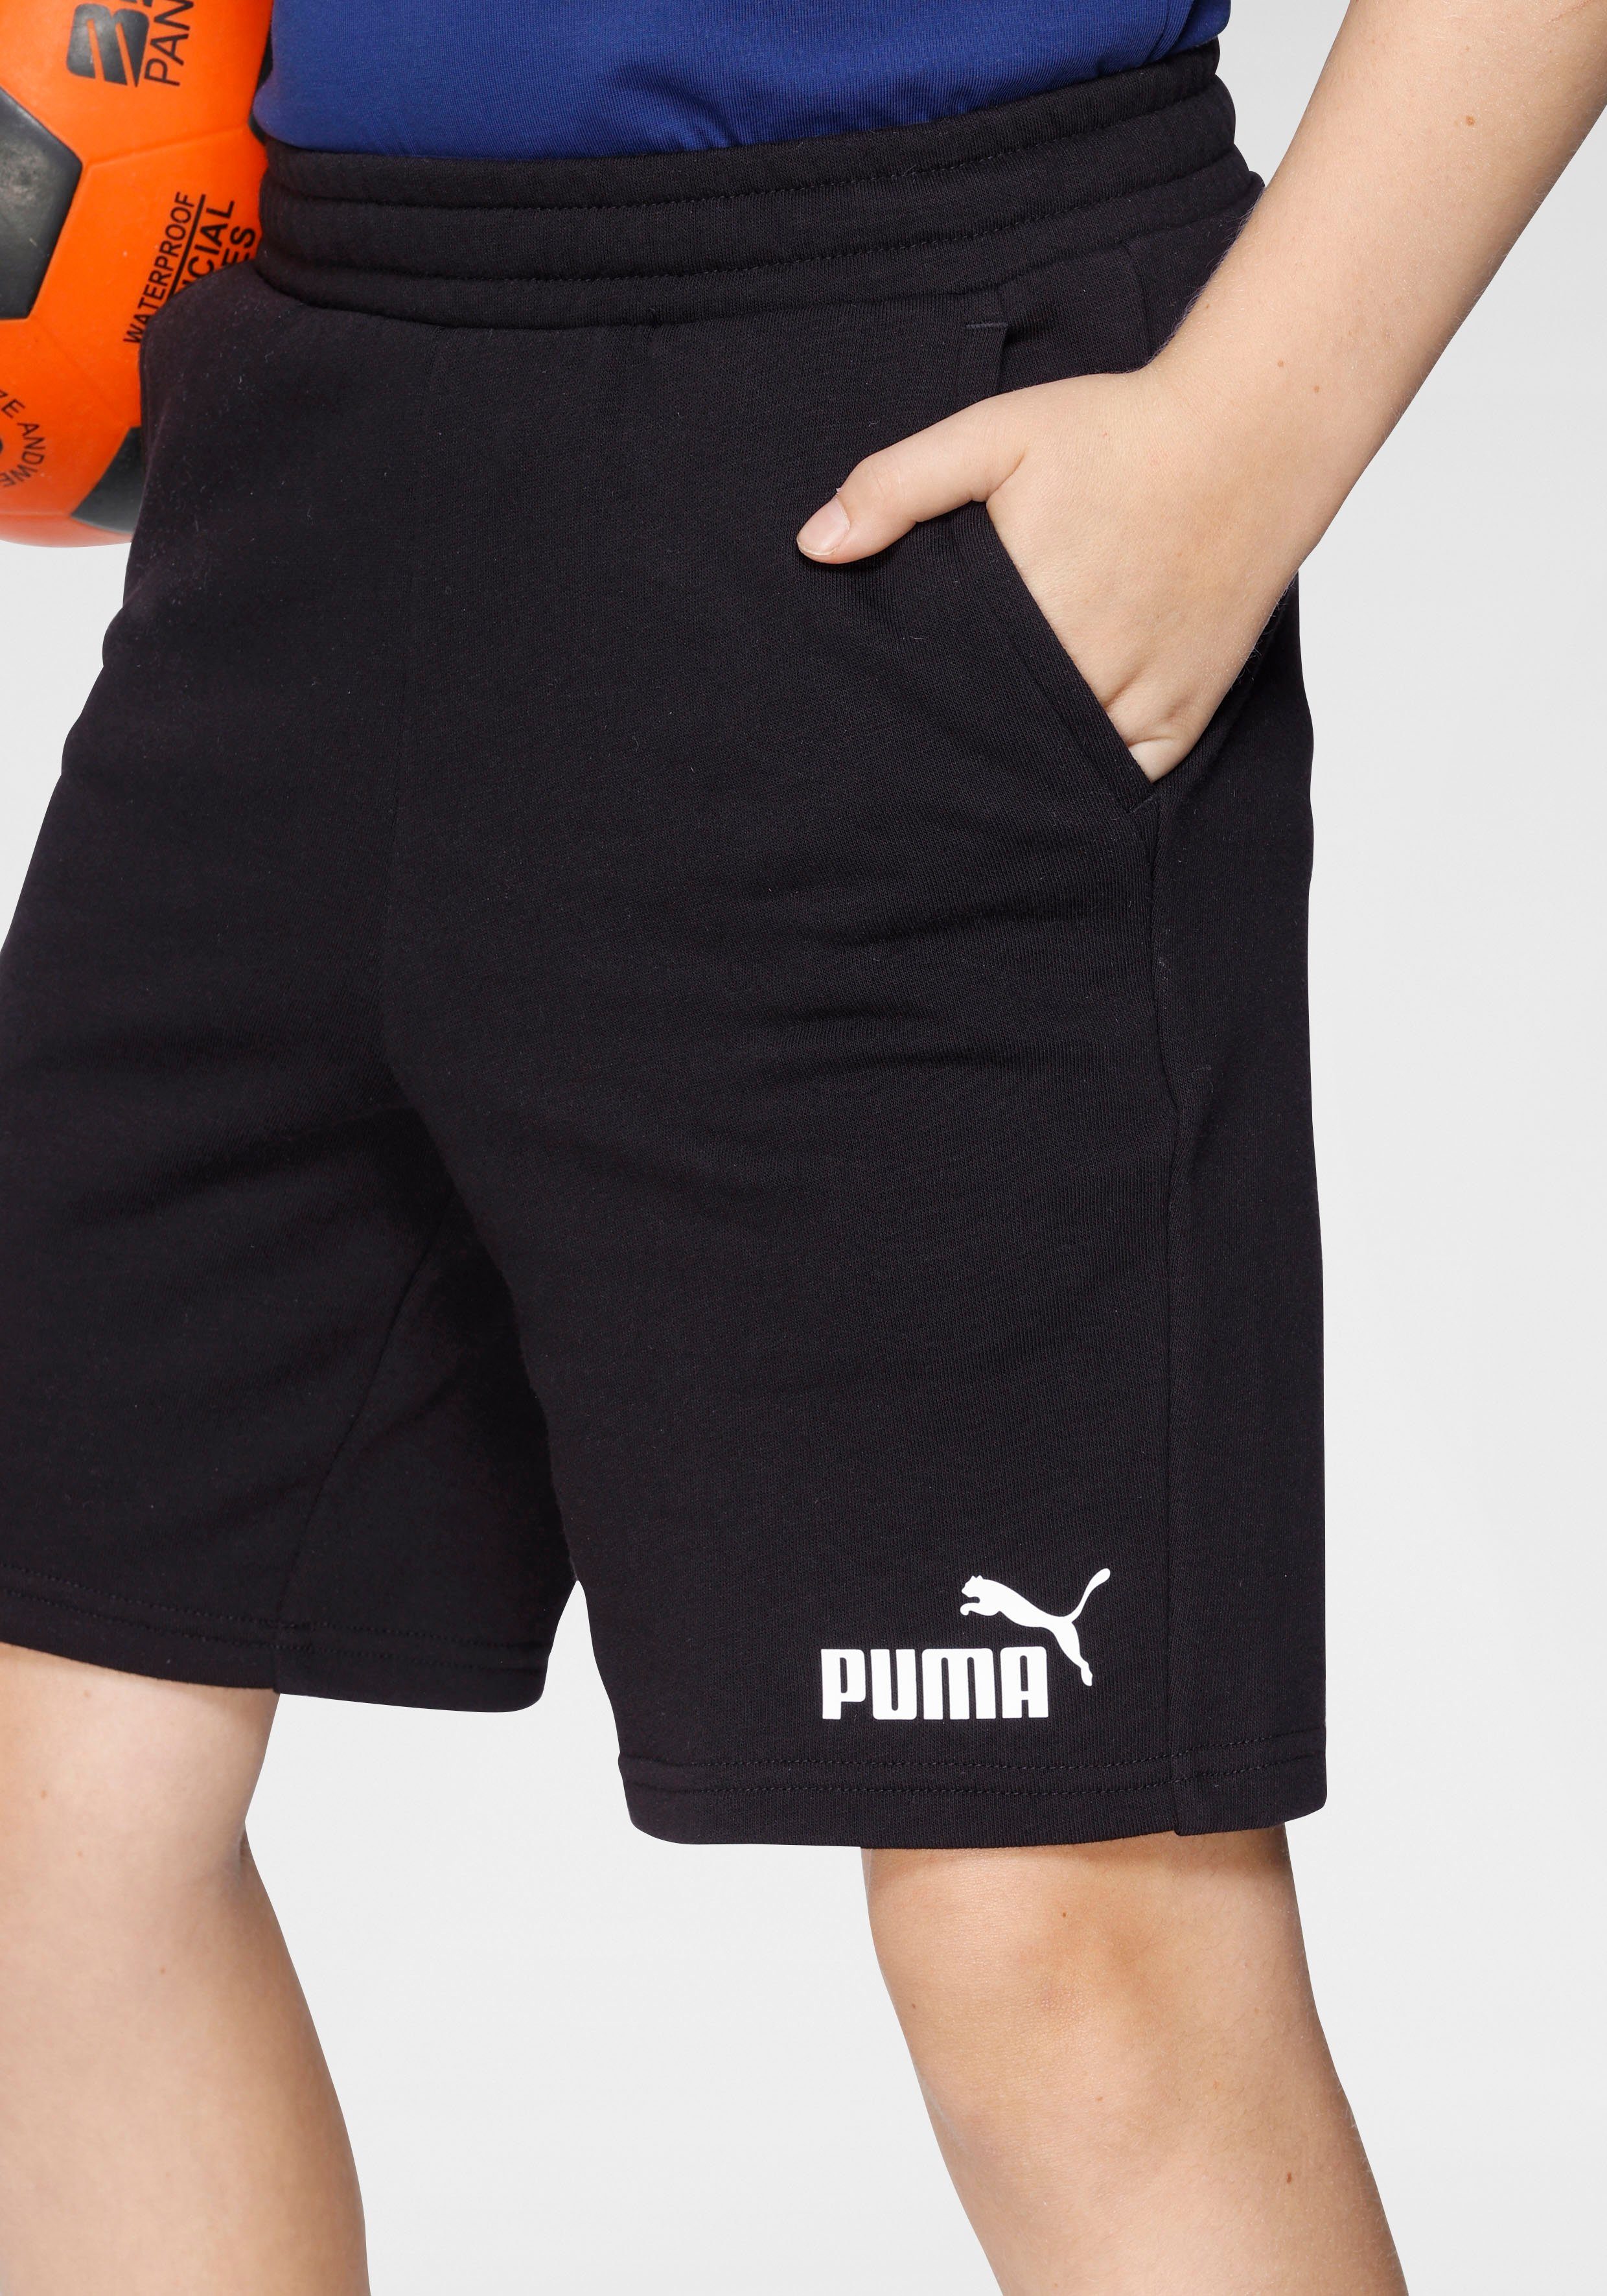 PUMA Shorts Black B Puma SWEAT ESS SHORTS